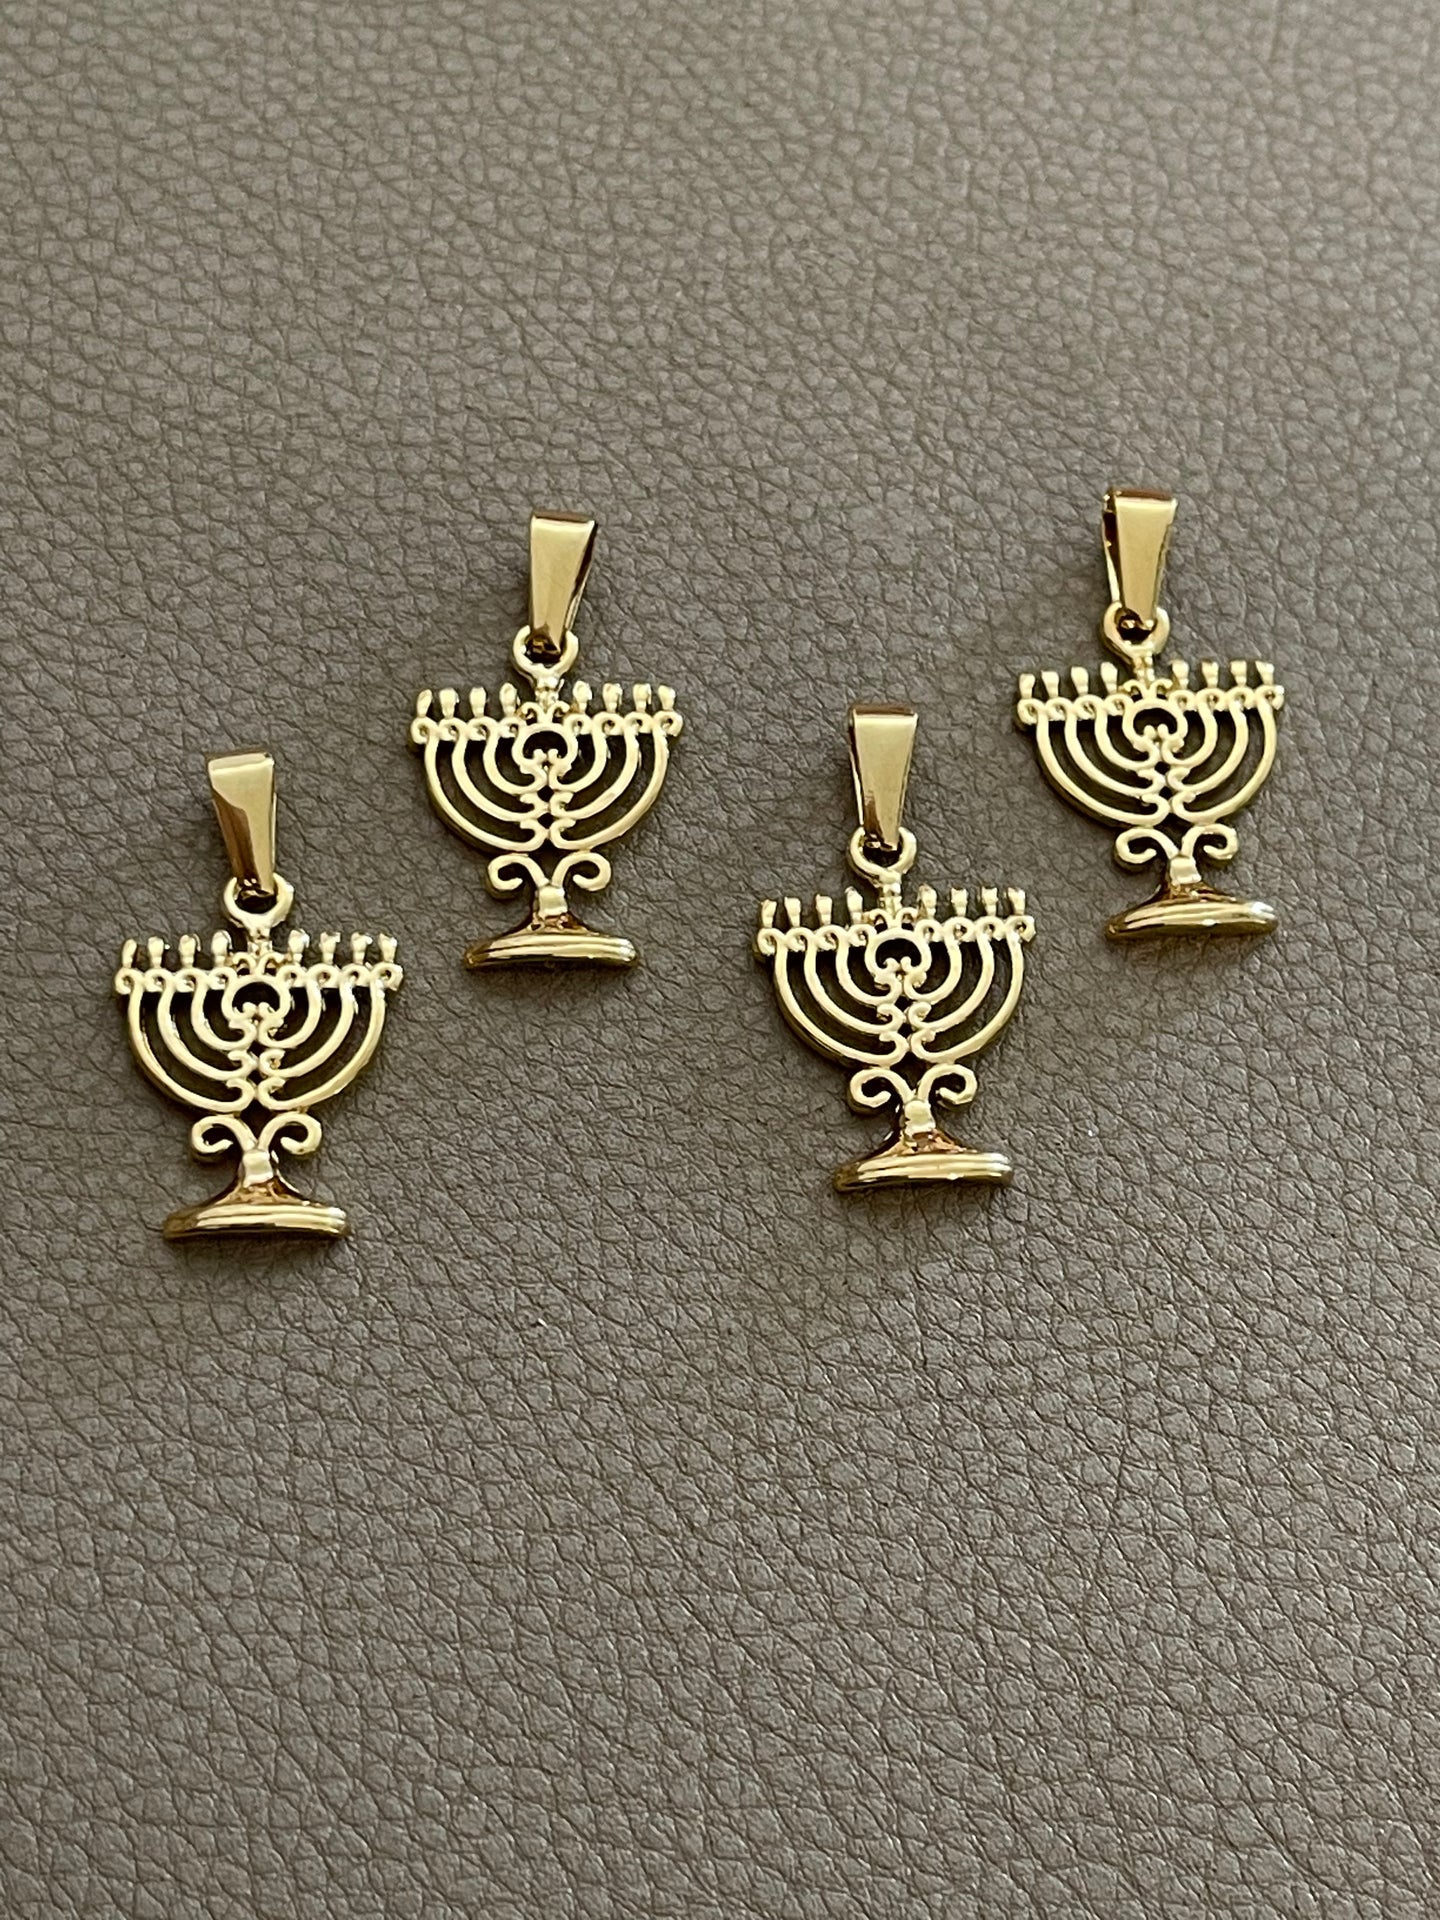 Hanukkah Pendant